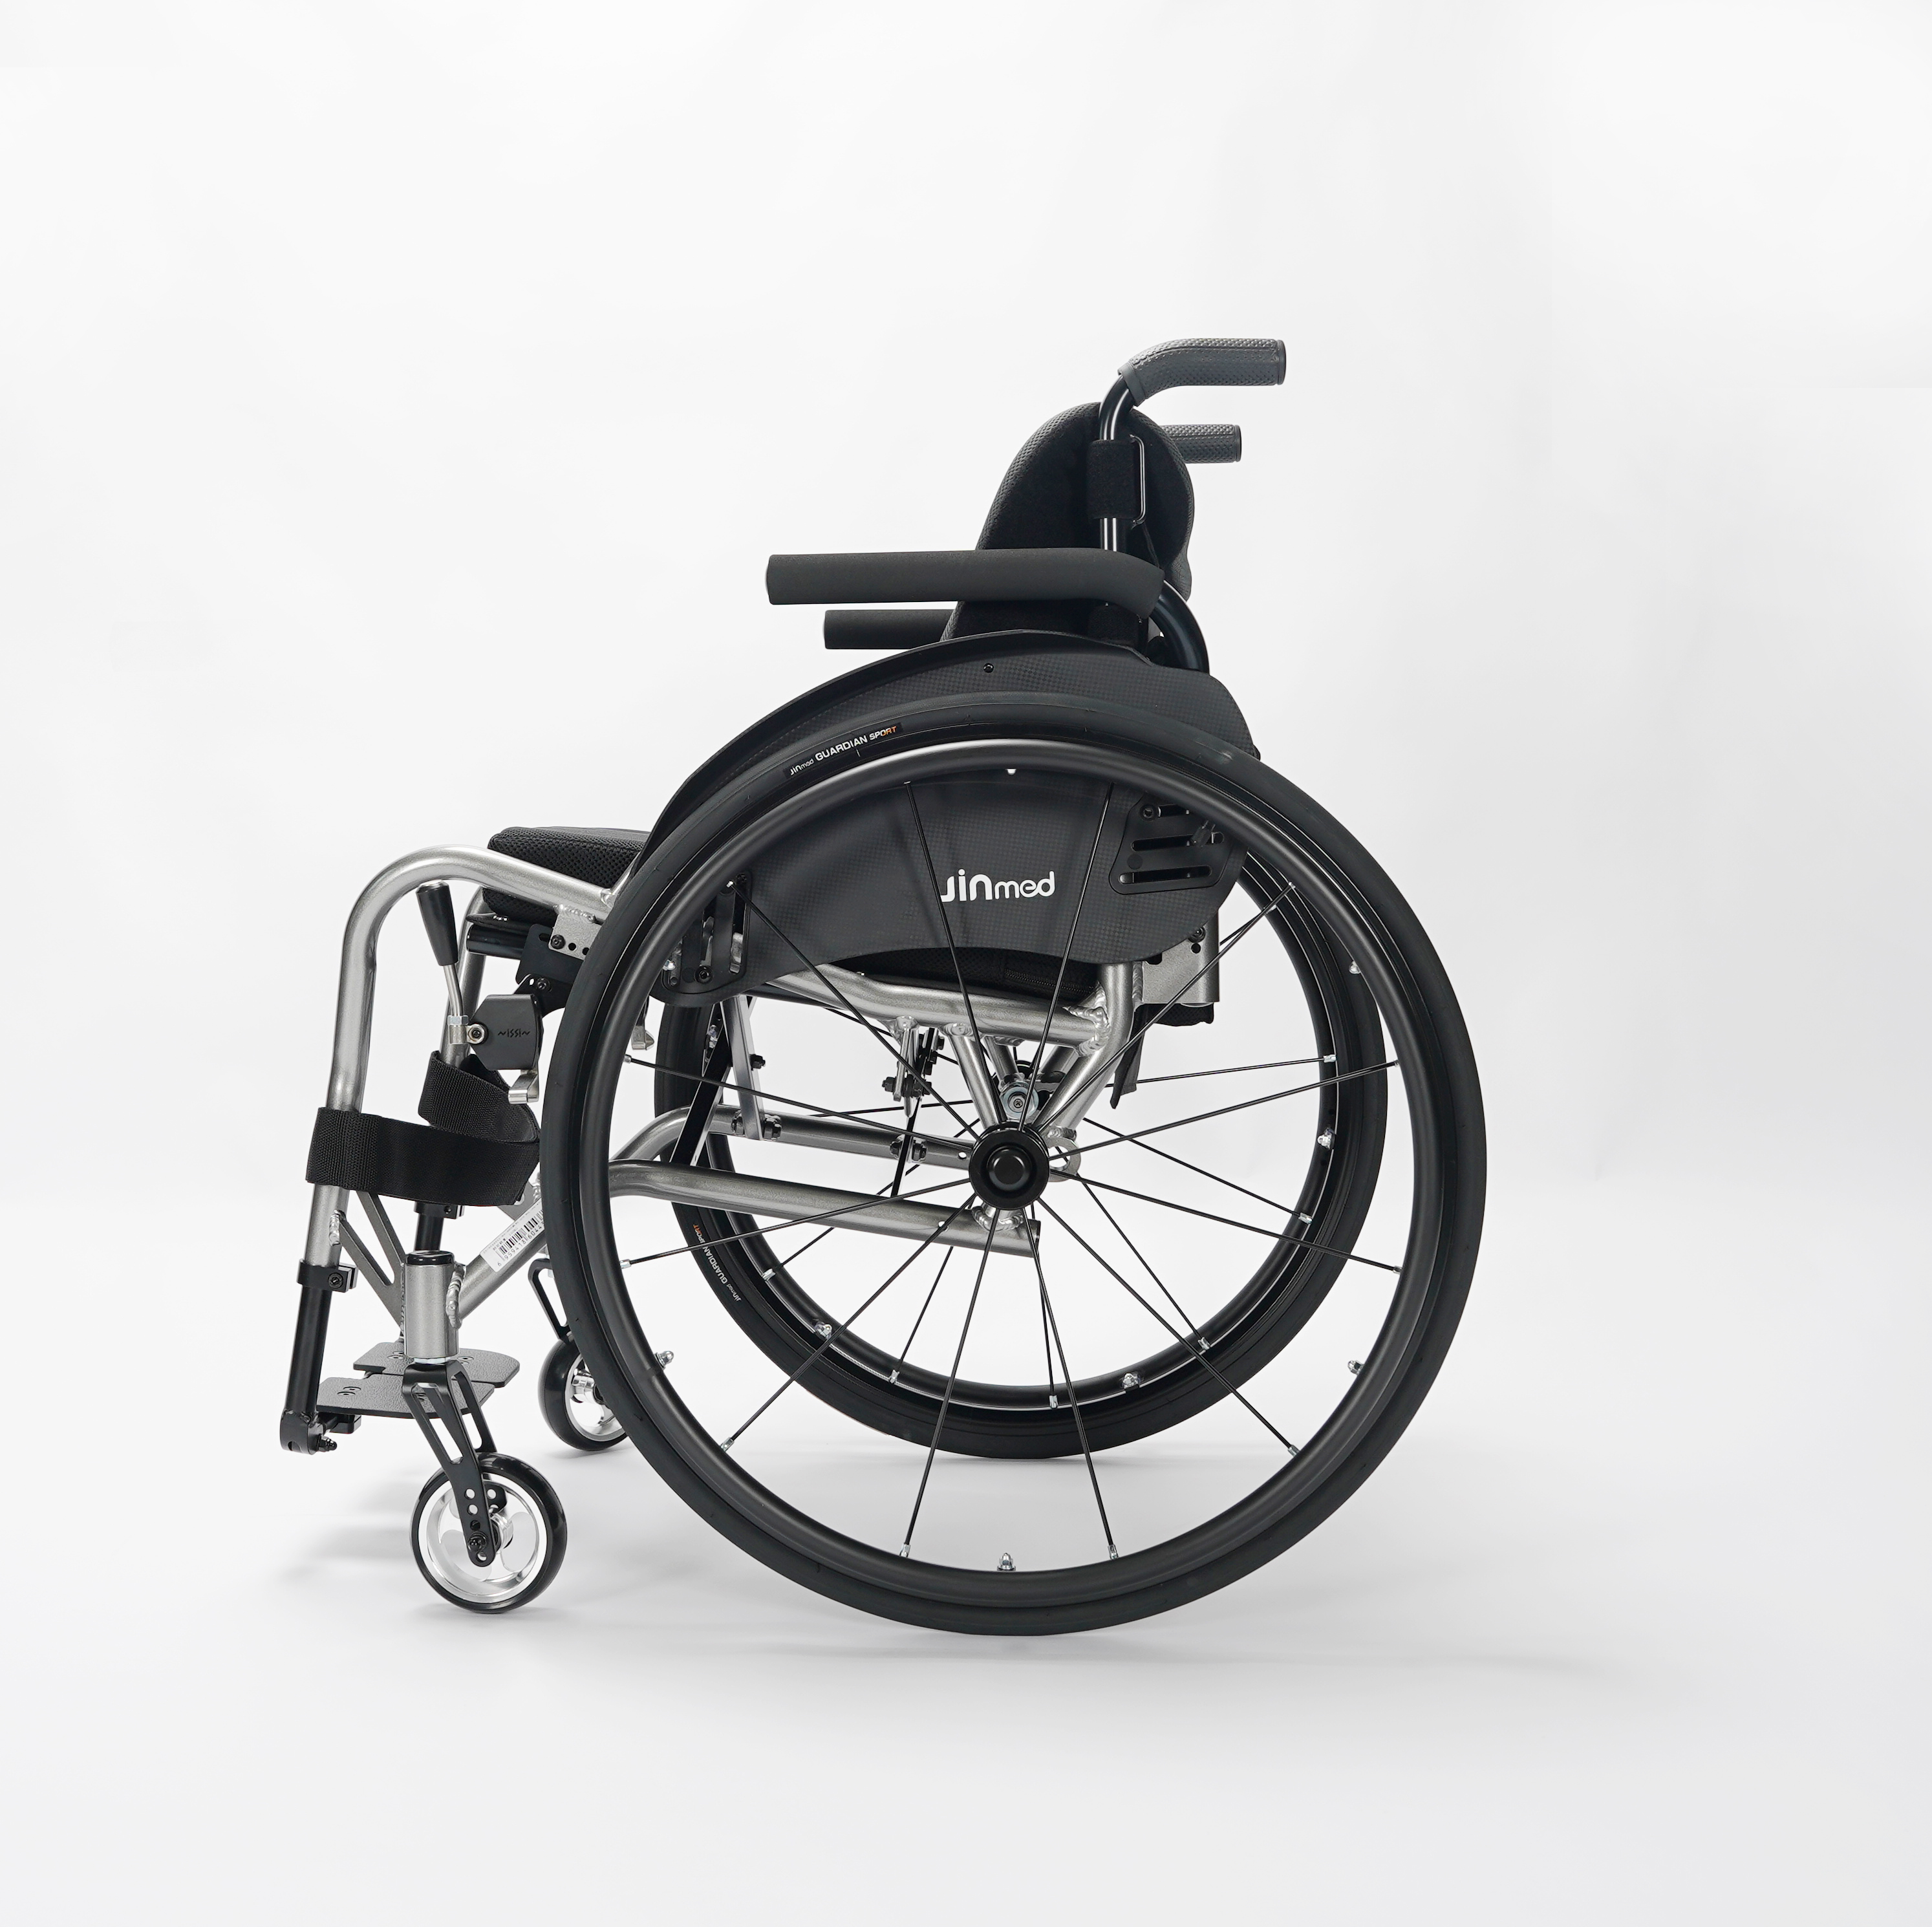 中进运动轮椅儿童轮椅电动轮椅航空铝材超轻便携折叠轮椅免托运工厂直销中进NA-421/432/433日本定制图片